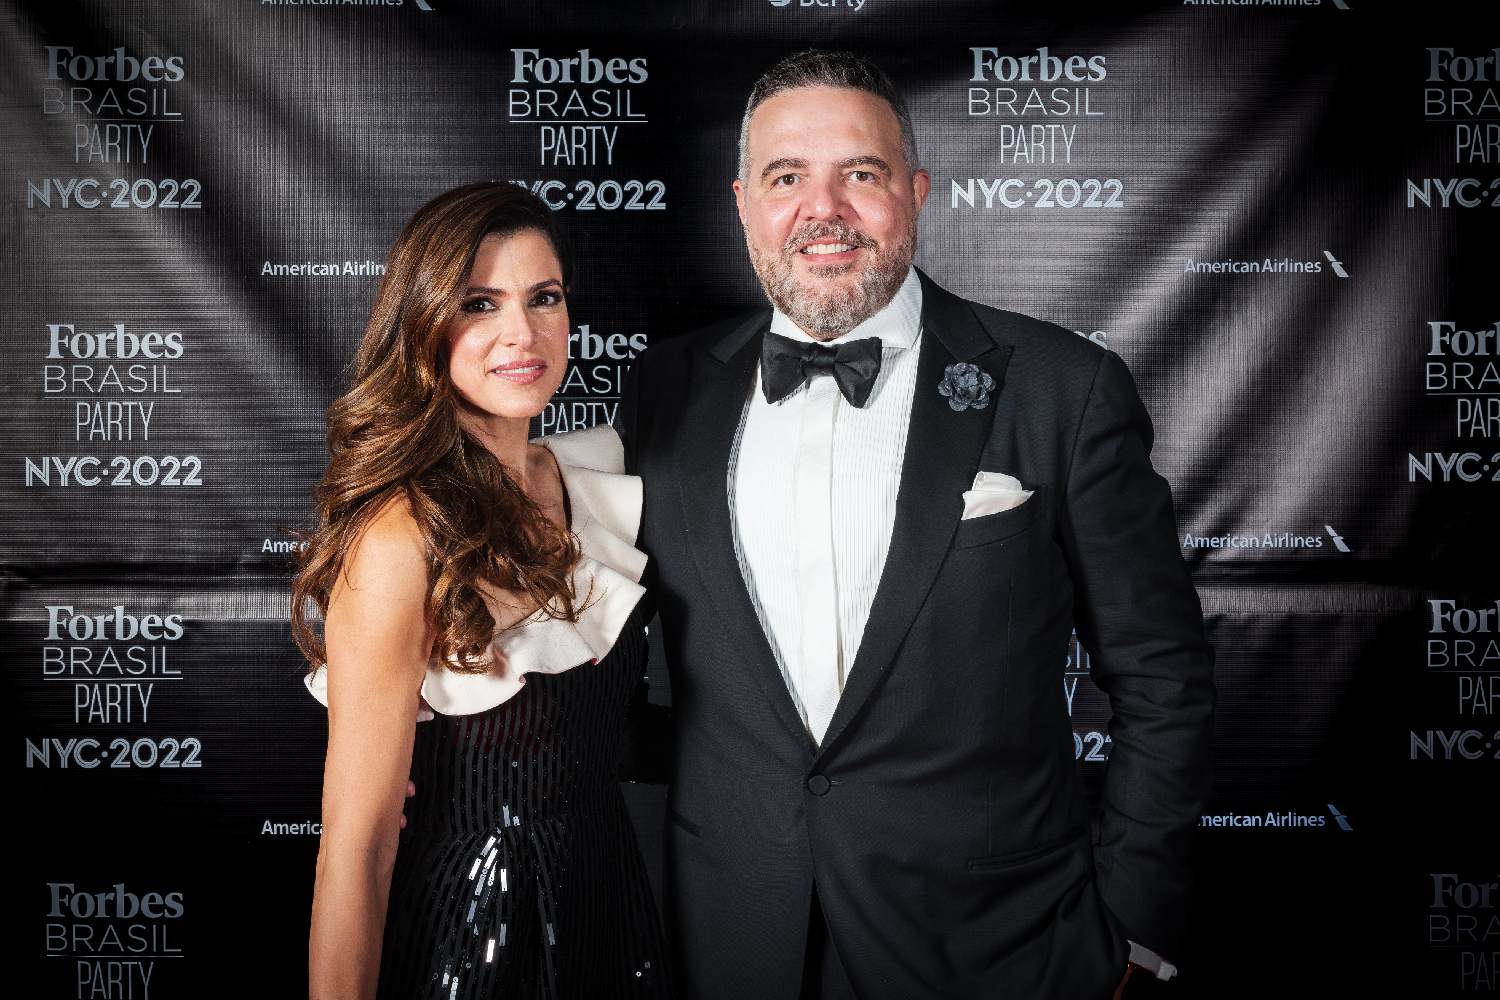 Forbes Brasil Party reúne nomes de destaque do Brasil em NY - Forbes